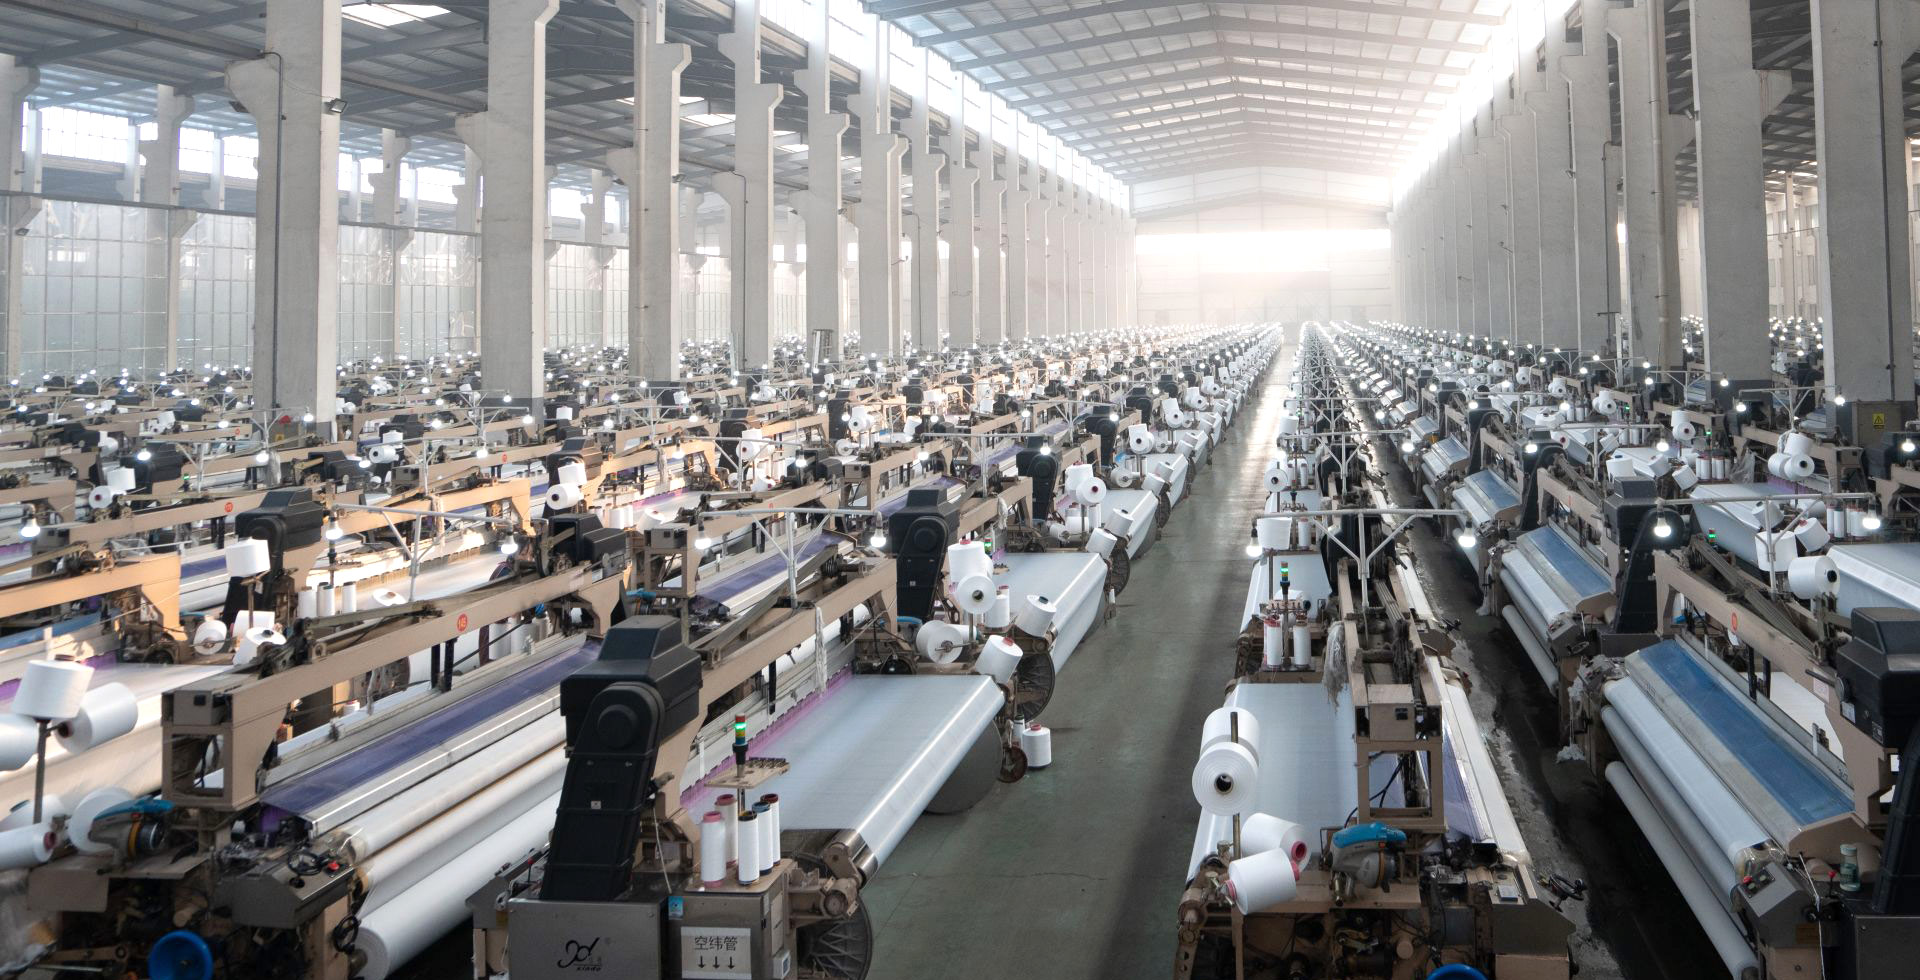 集紡絲、加彈、織布、印花加工、國內外銷售一體化的企業